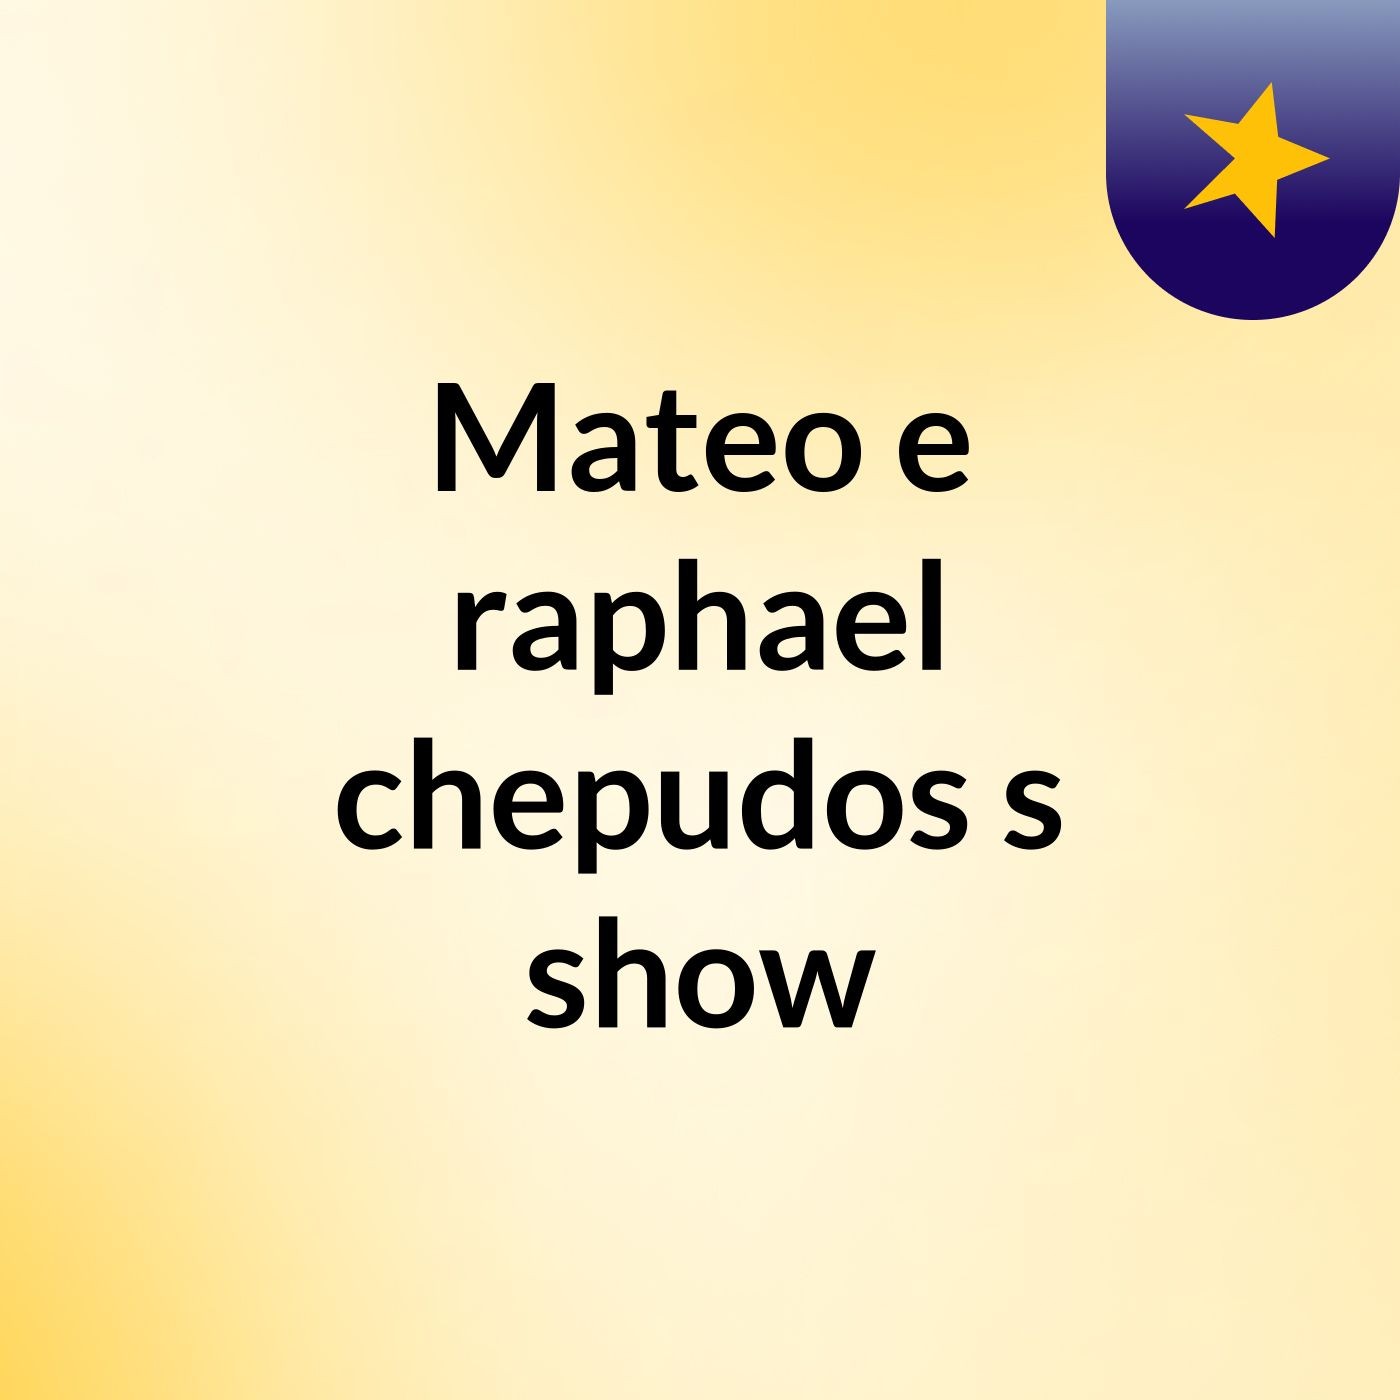 Mateo e raphael chepudos's show